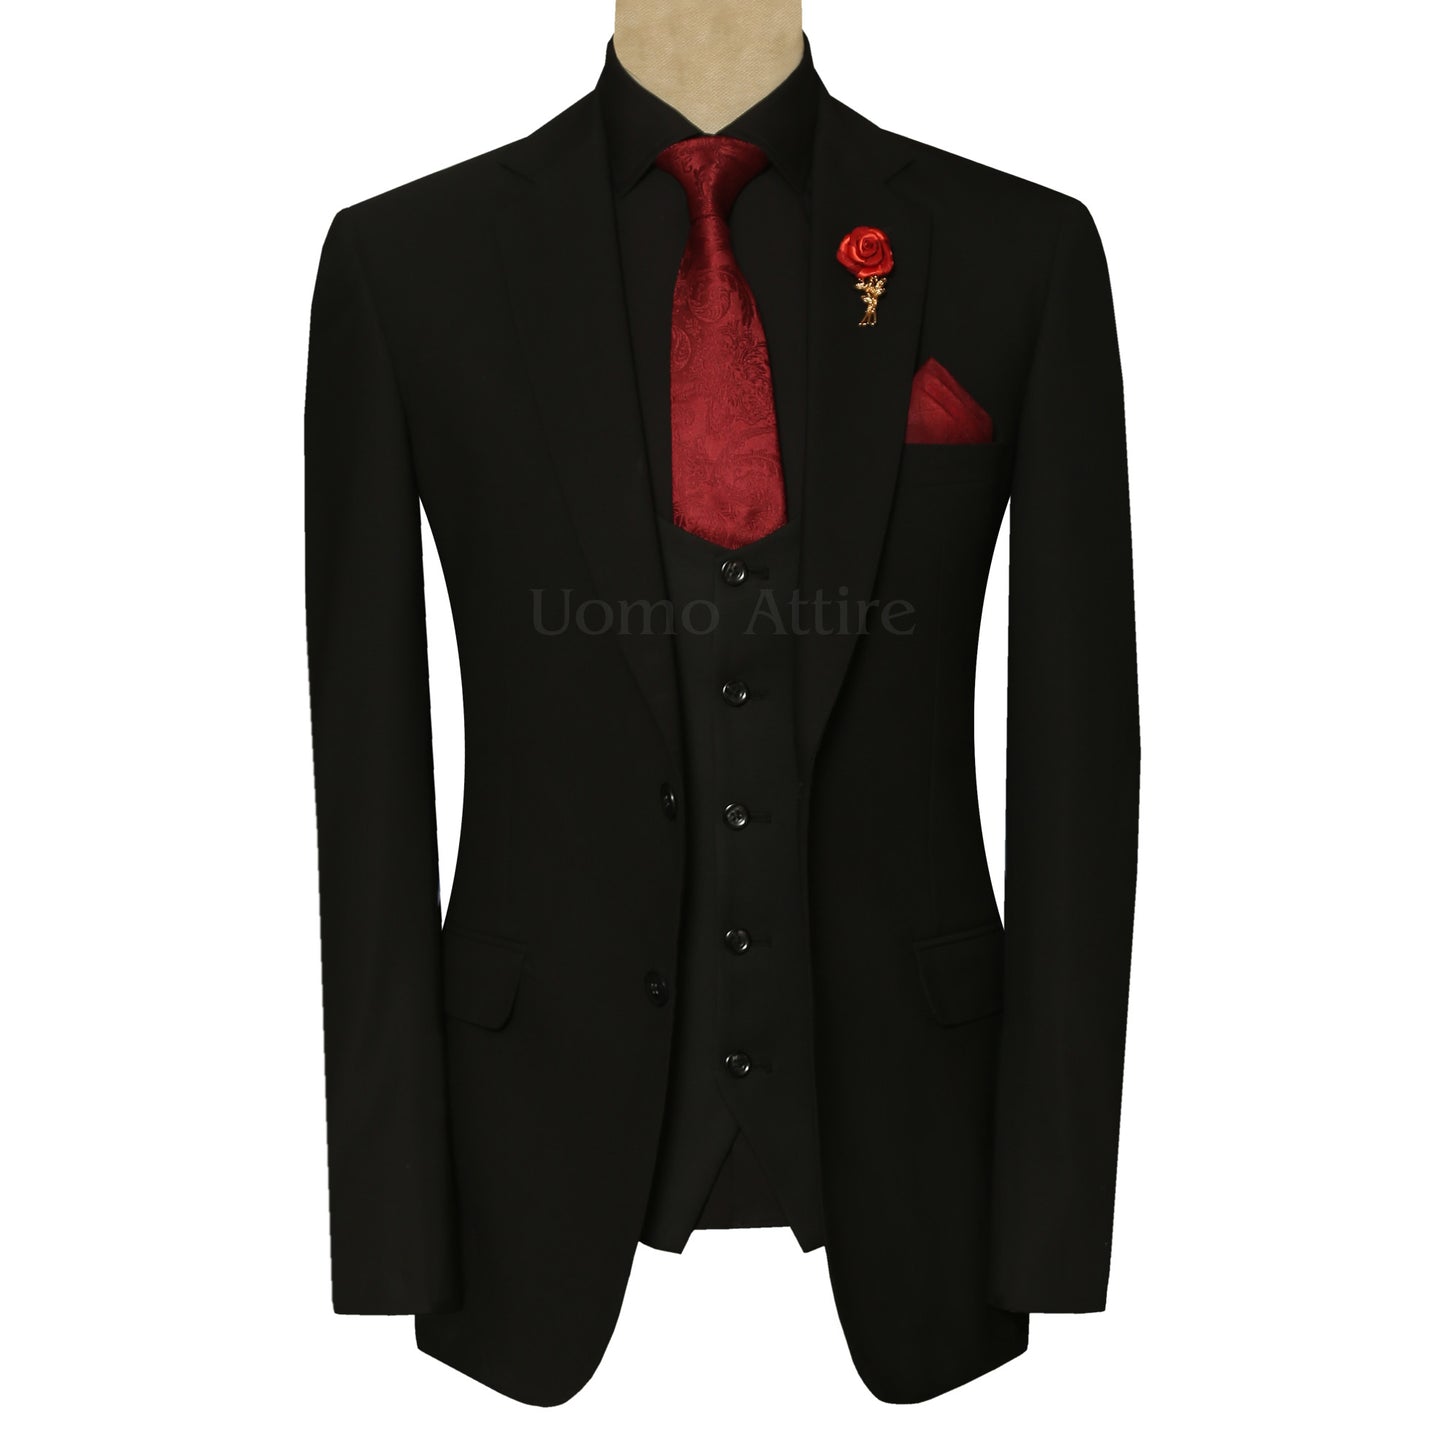 सूट में चैन लगाने का सही तरीका सीखें | how to attach zip in suit - YouTube